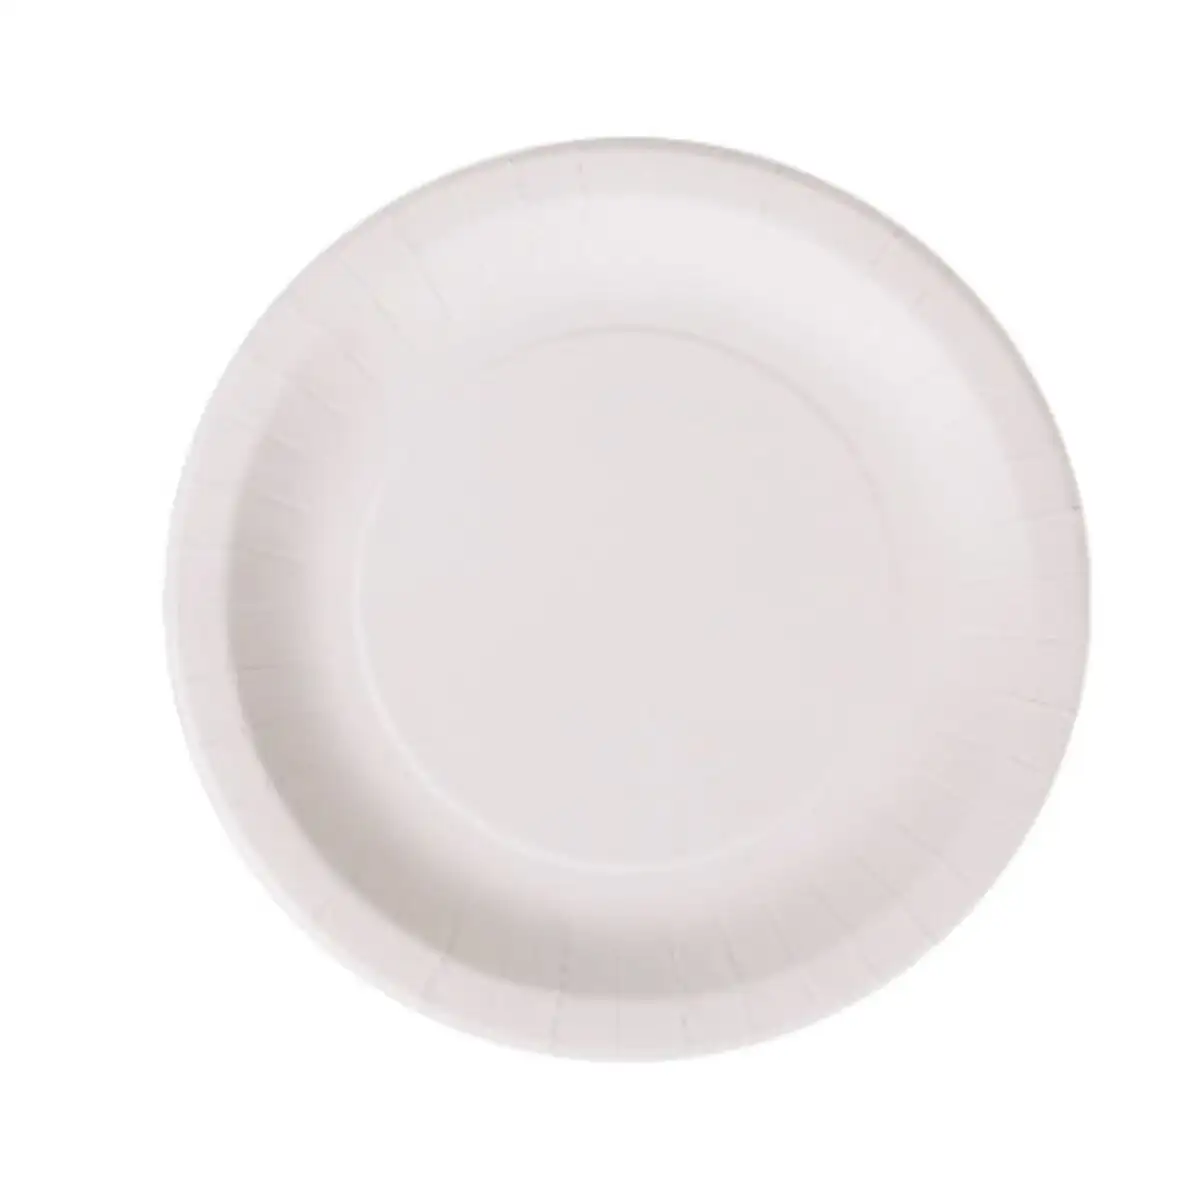 Service de vaisselle algon blanc carton produits a usage unique 28 cm 3 unites_1286. DIAYTAR SENEGAL - Où la Qualité et la Diversité Fusionnent. Explorez notre boutique en ligne pour découvrir une gamme variée de produits qui incarnent l'excellence et l'authenticité.